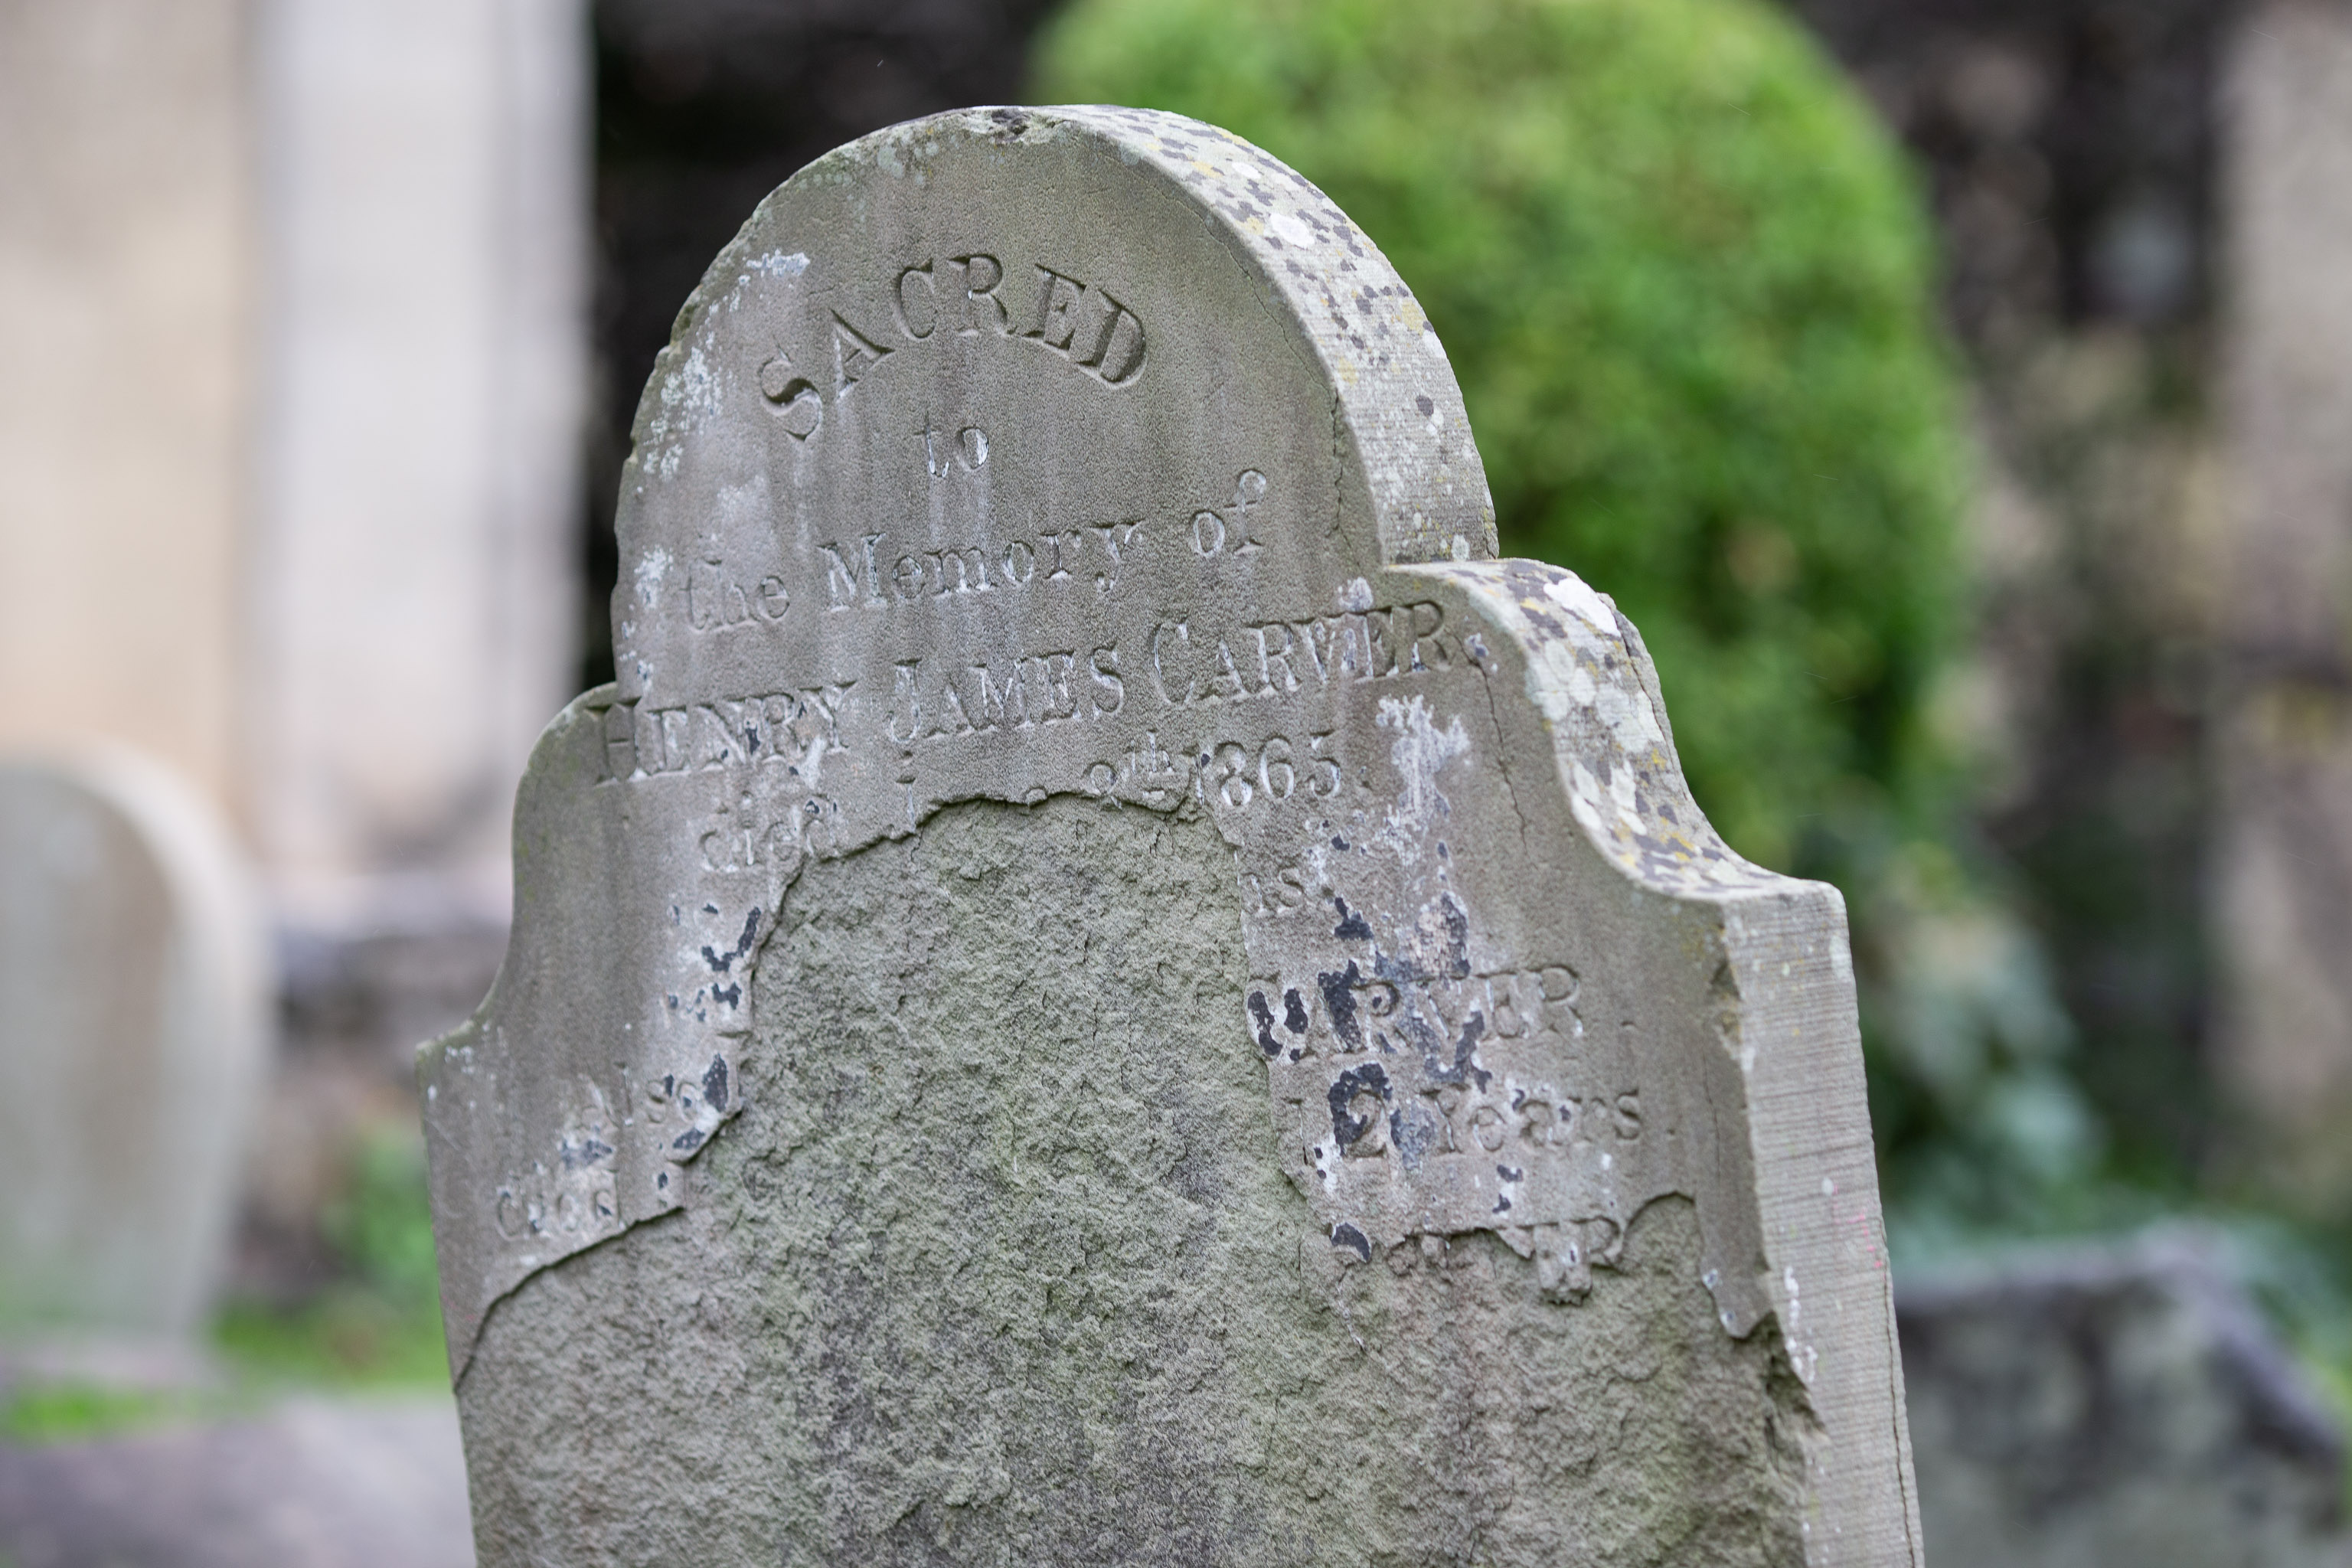 SACRED
Henry James Carver, died 1865. Hope Chapel, Hotwells.
